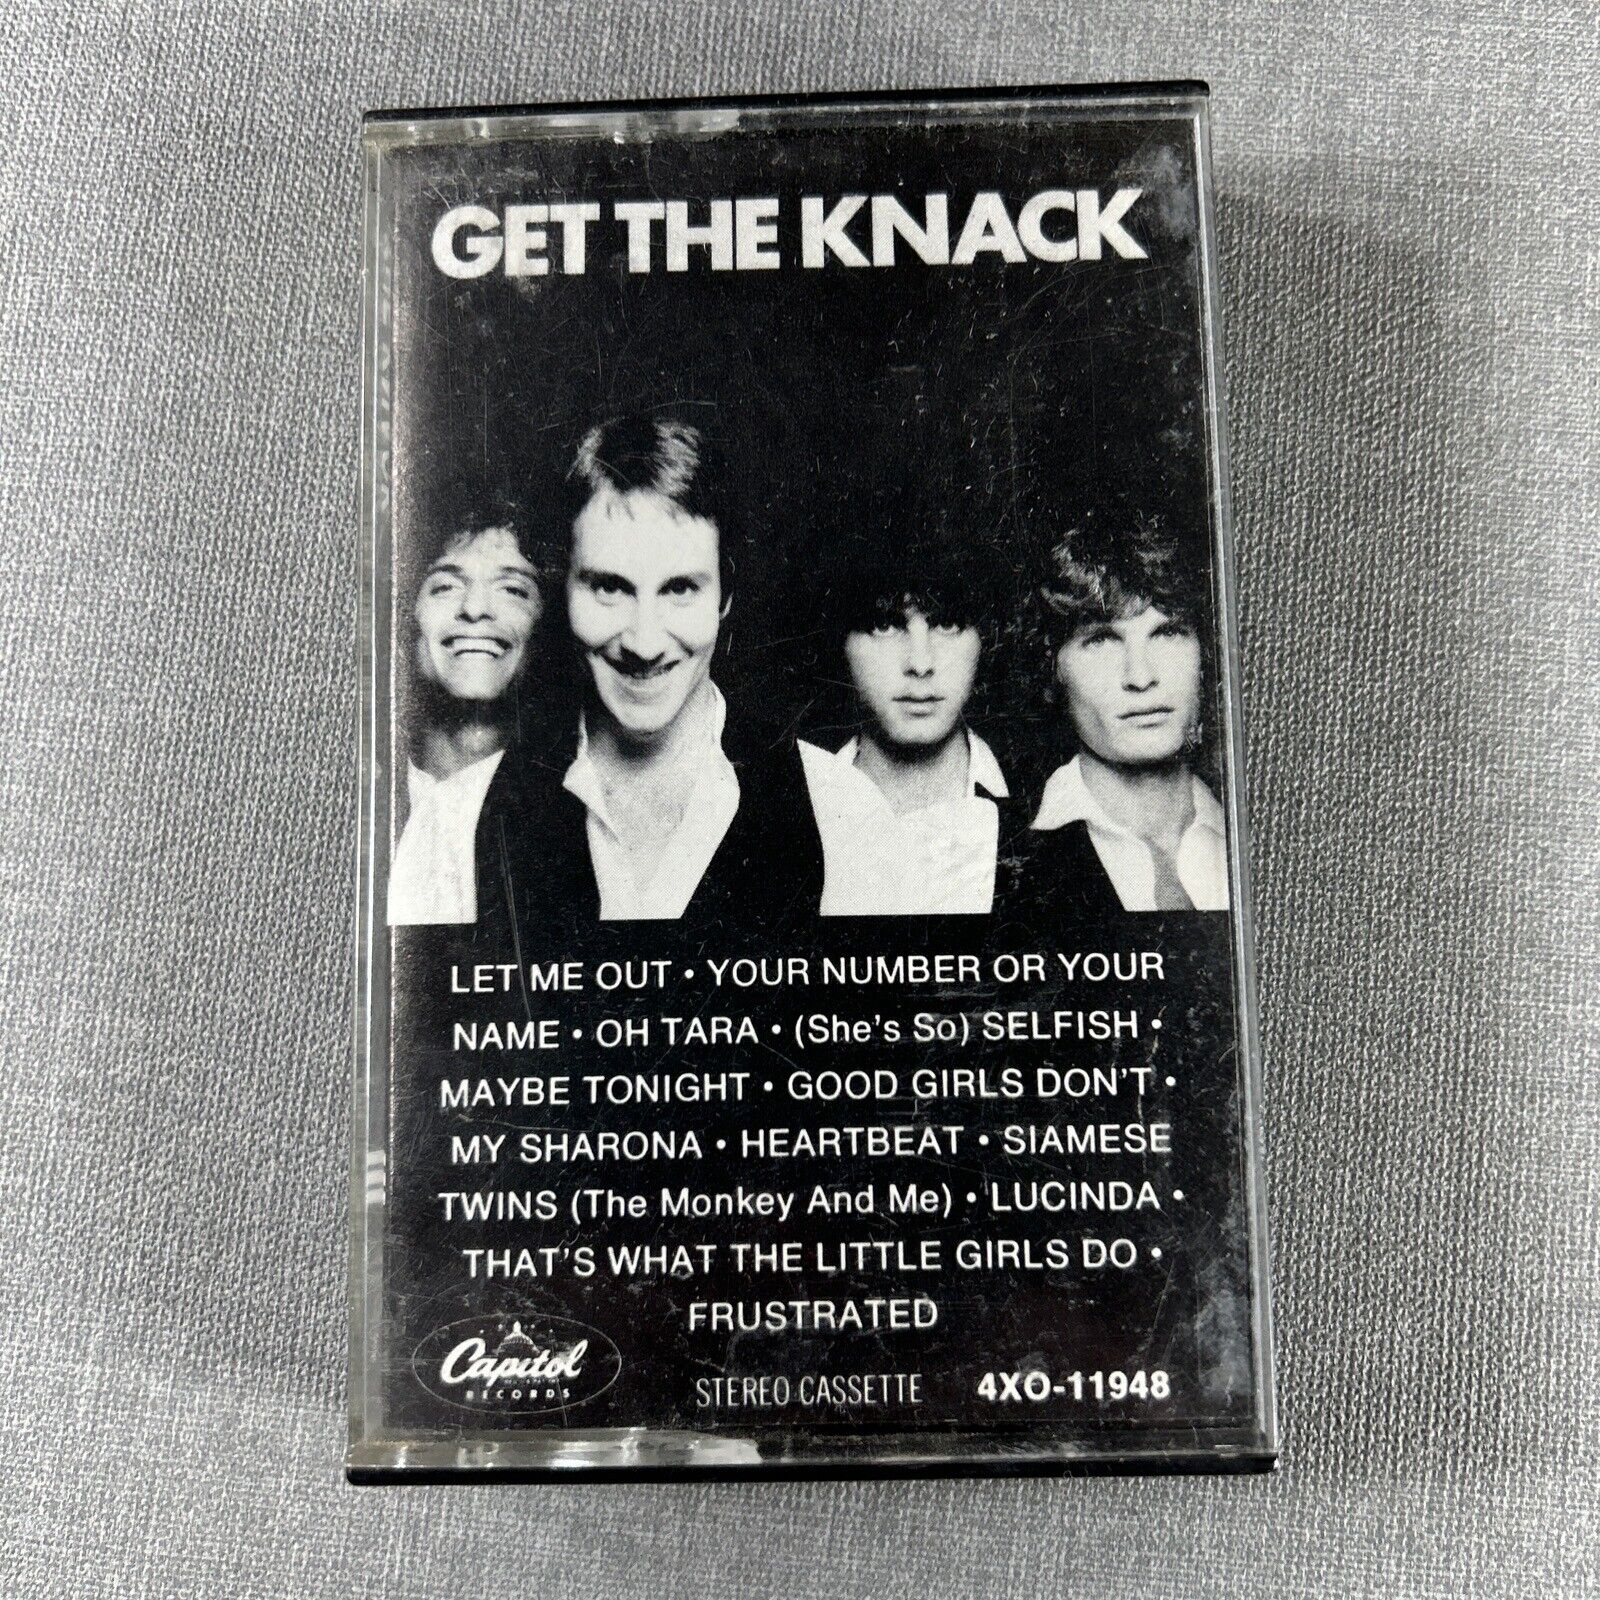 The Knack Cassette Tape Get The Knack 1979 My Sharona